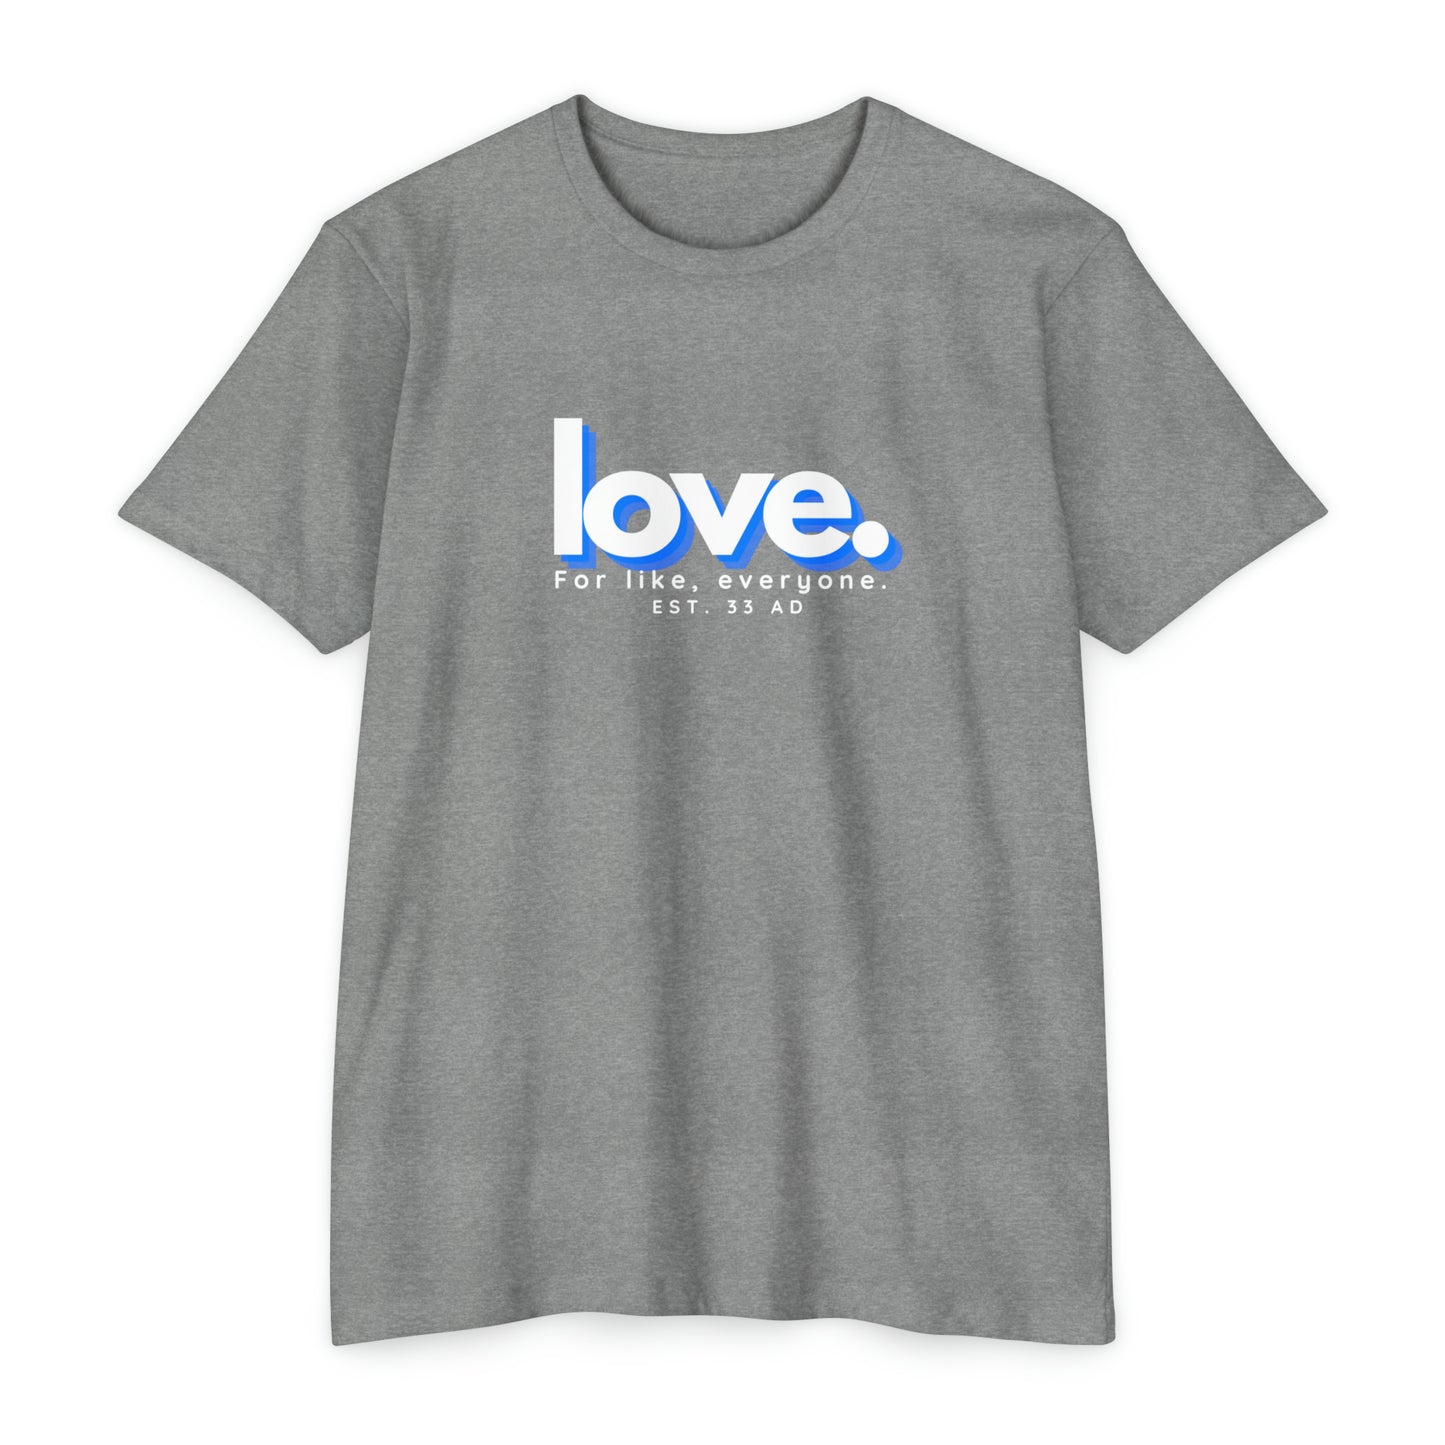 Love, Christian T-shirt for men and women